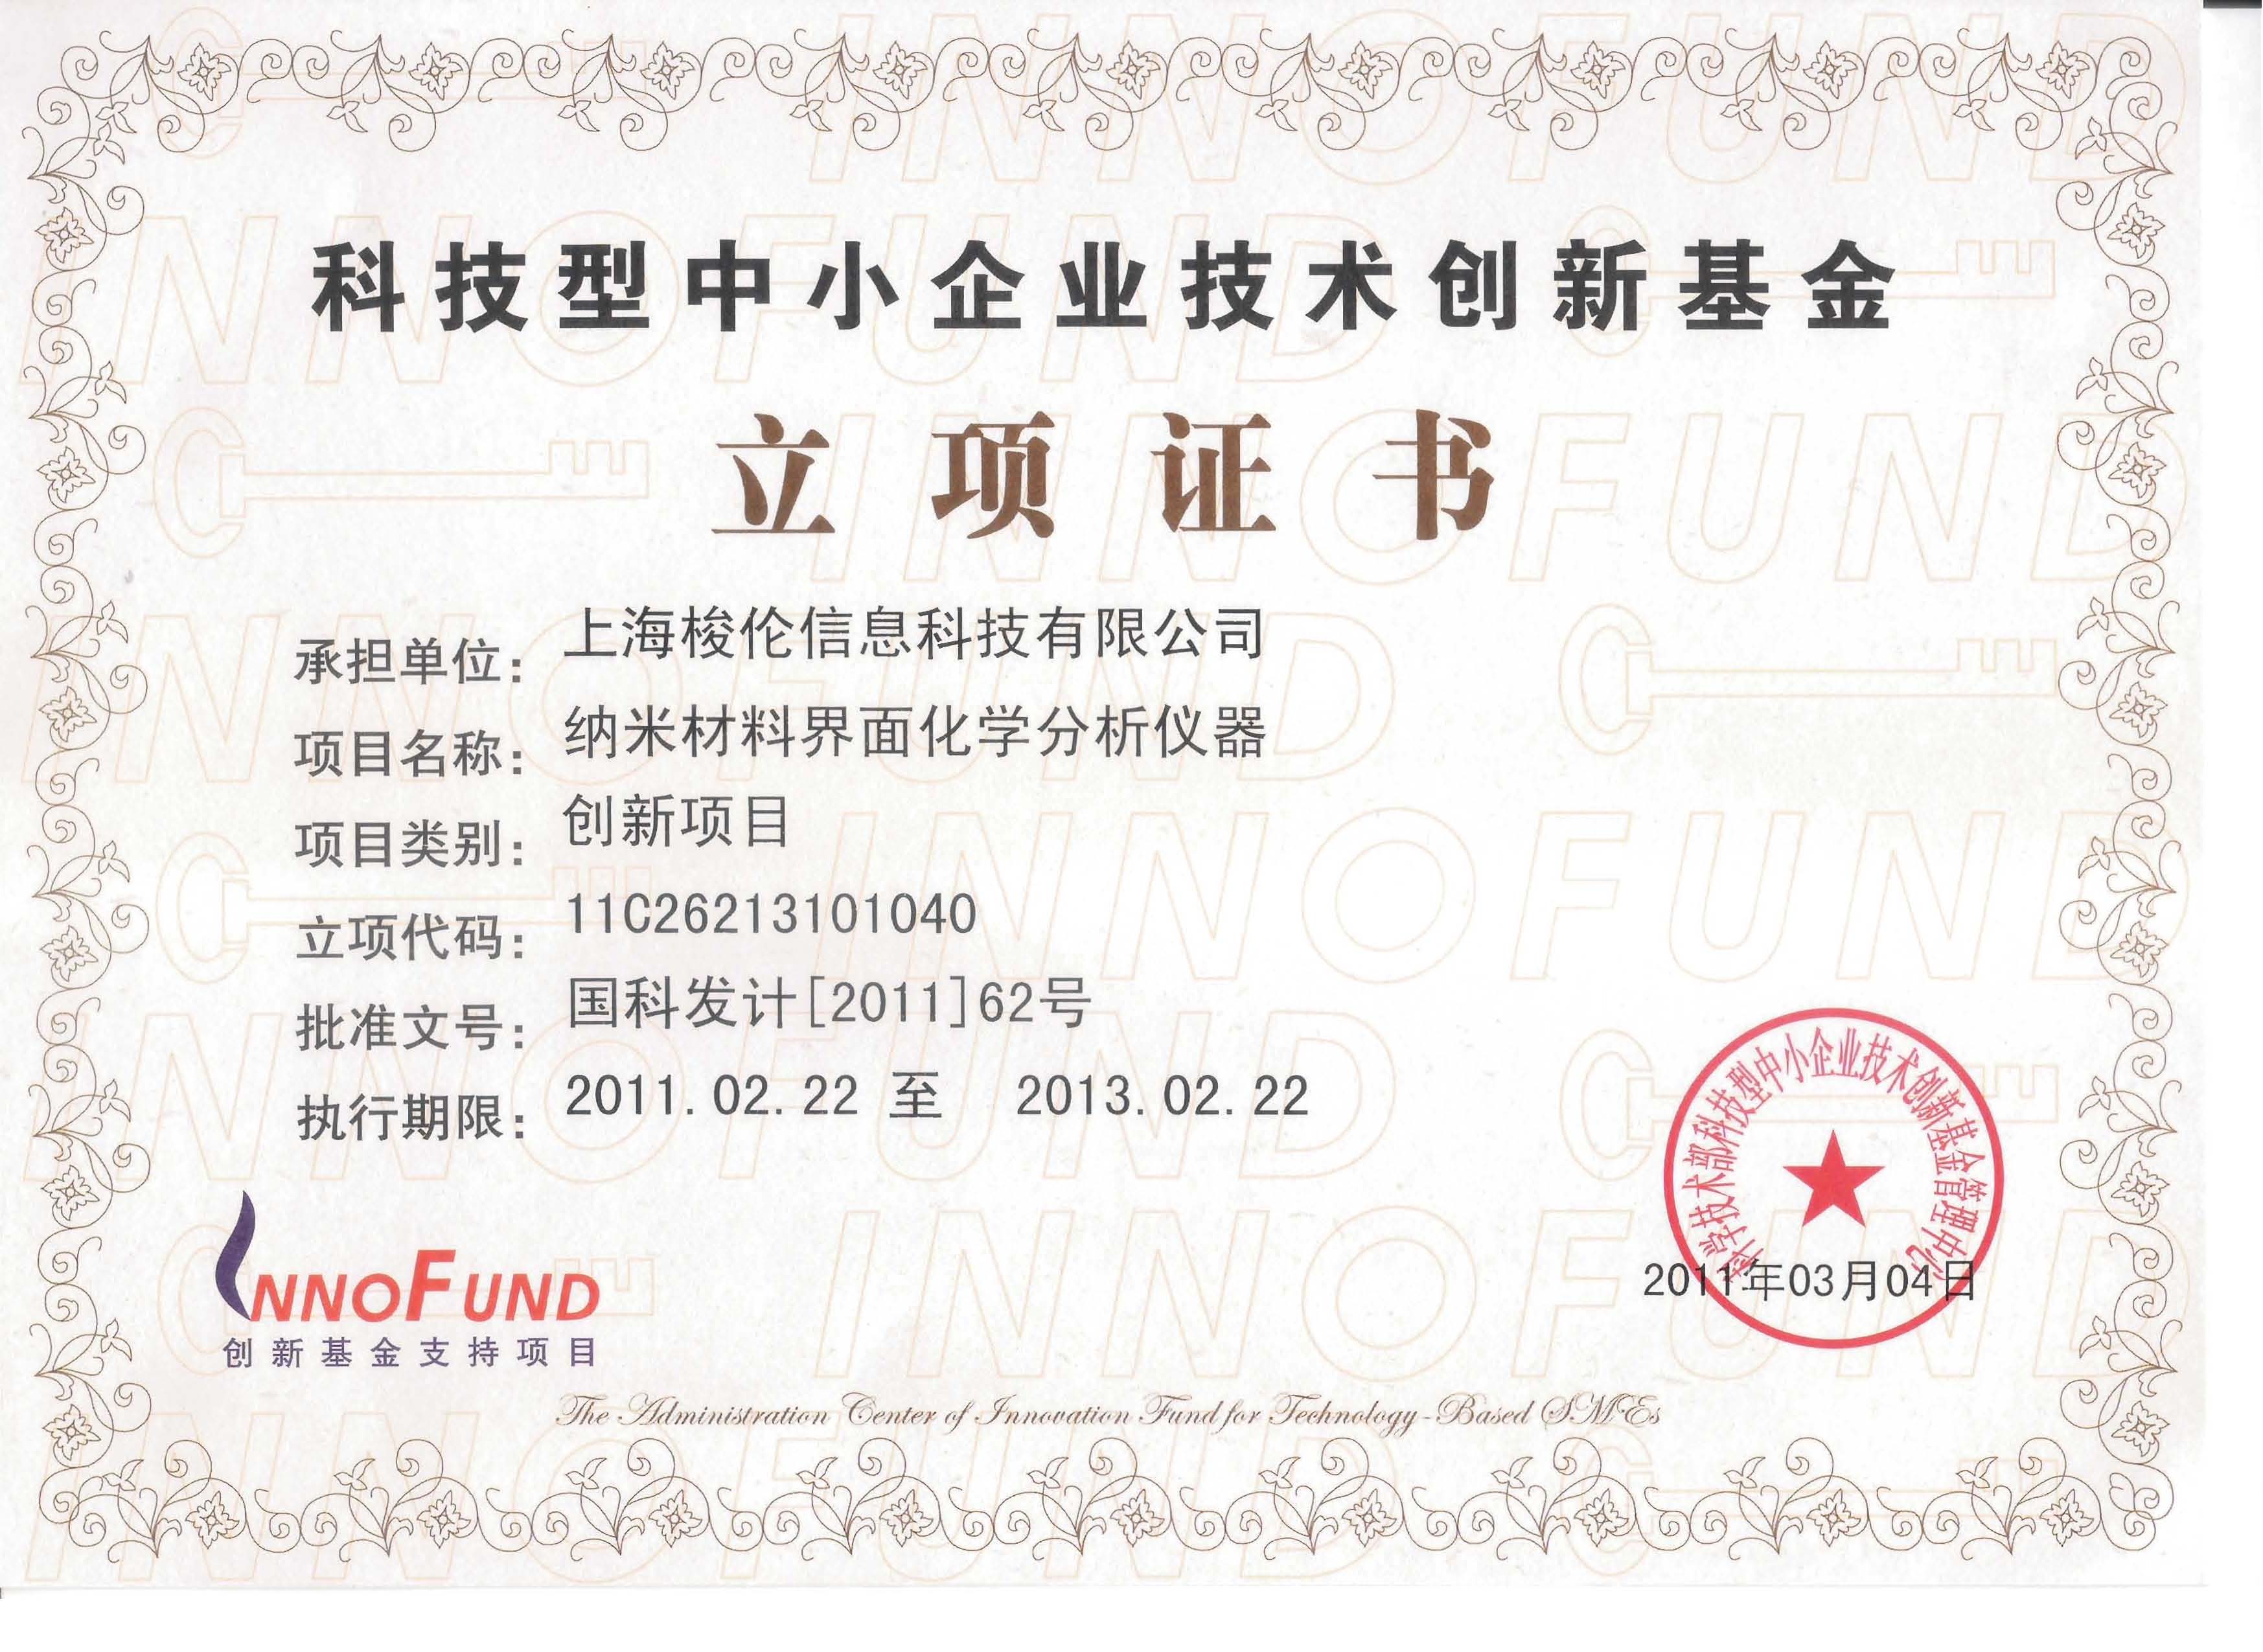 上海梭伦创新基金扶持项目证书